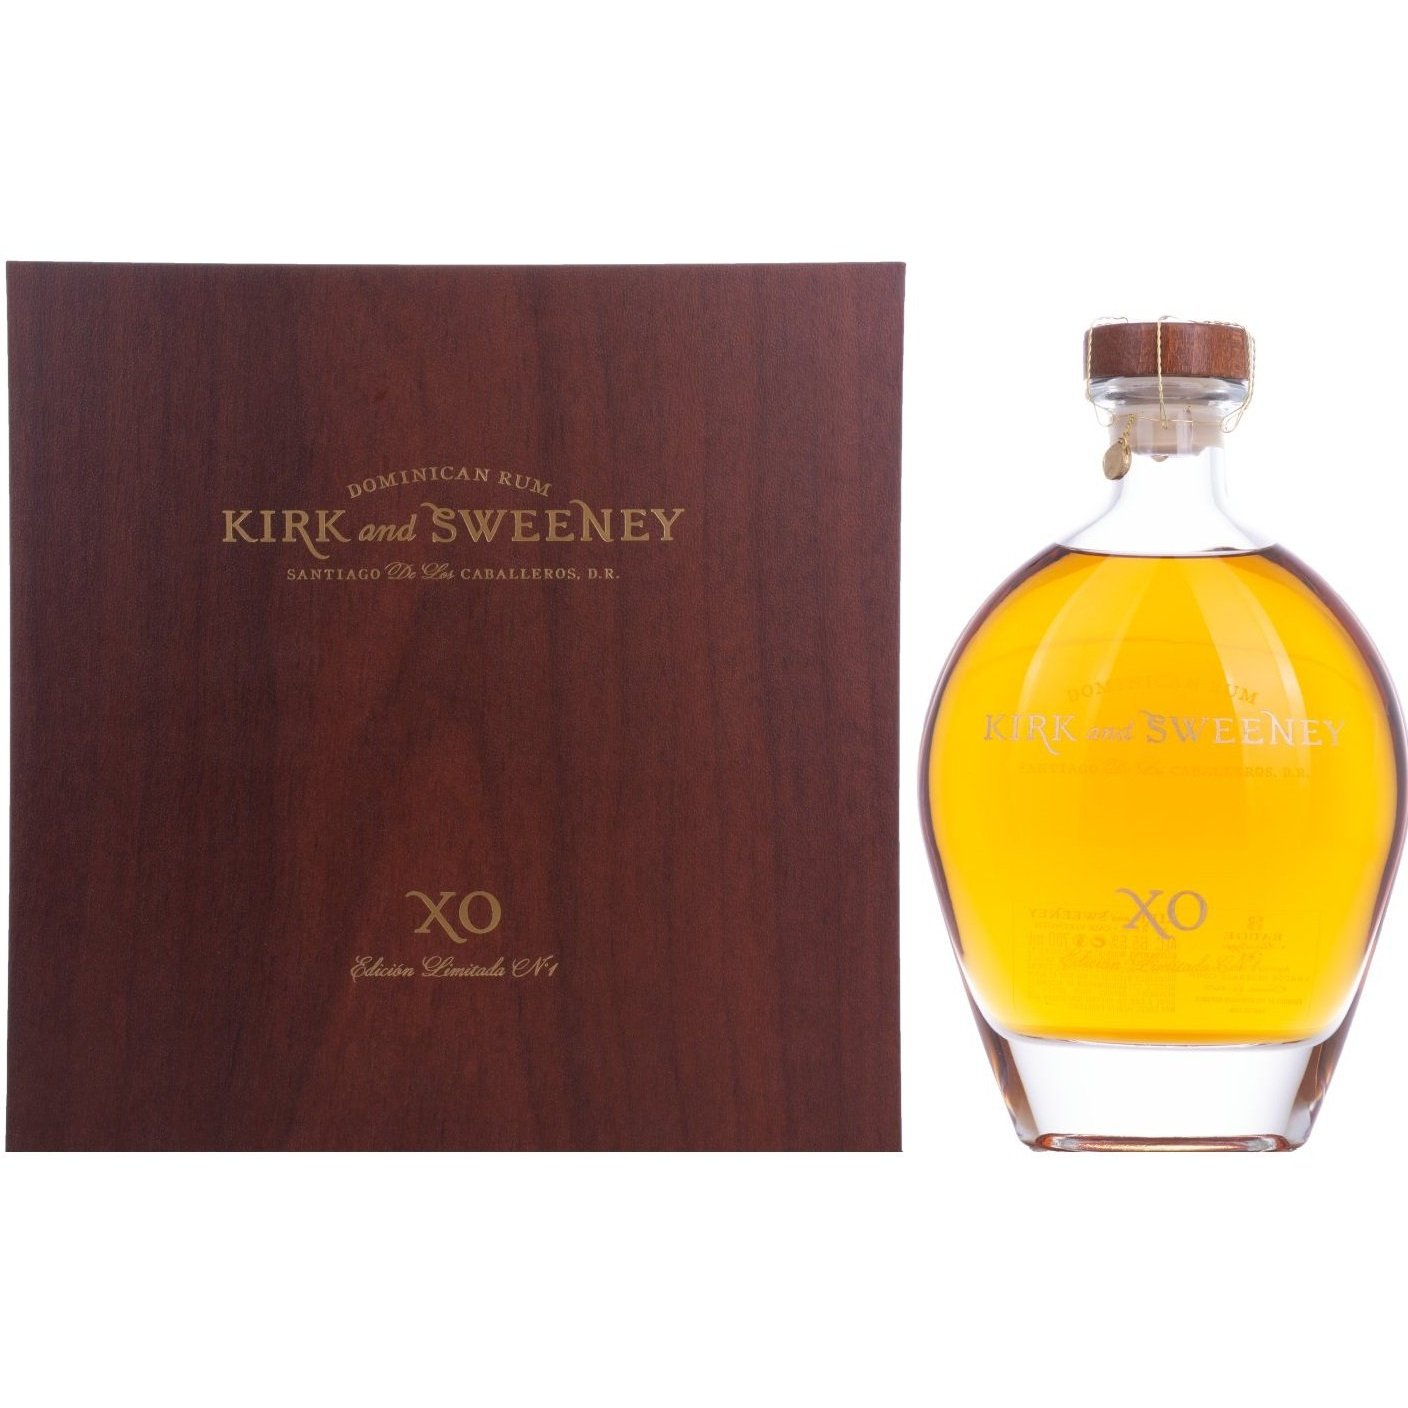 Kirk & Sweeney XO Dominican Rum Edicion Limitada No. 1 65,5% Vol. 0,7l in Giftbox